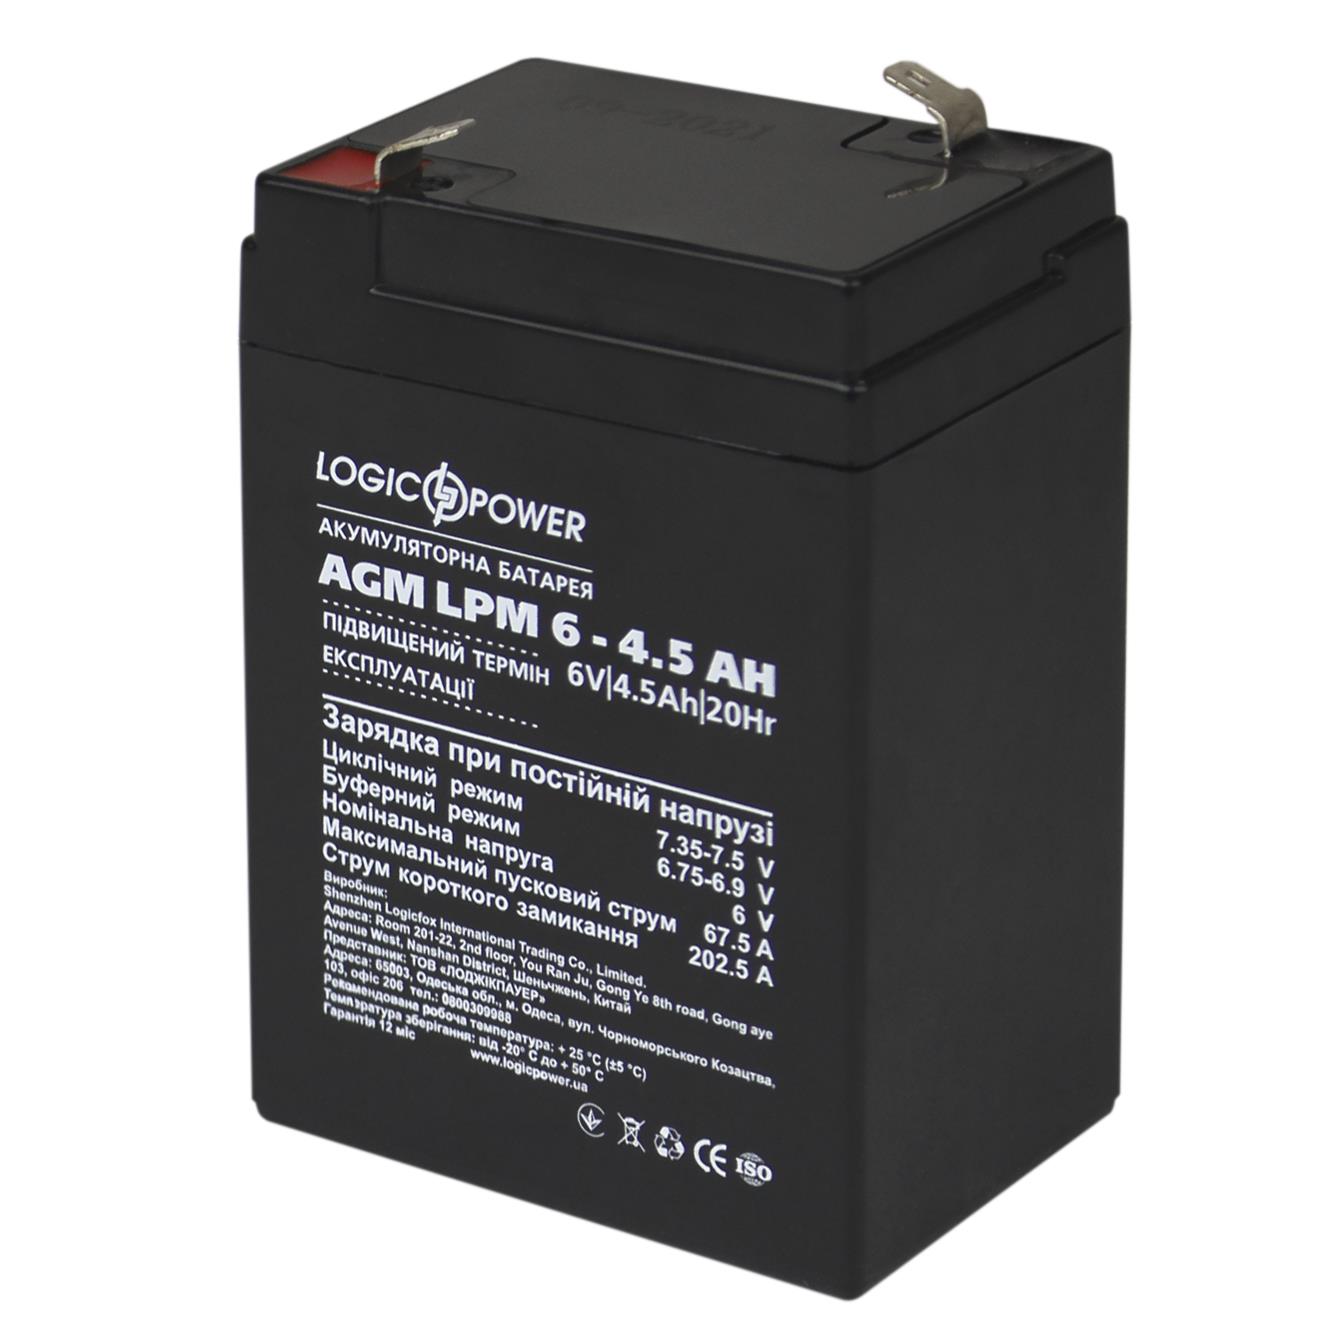 Характеристики акумулятор свинцево-кислотний LogicPower AGM LPM 6V - 4.5 Ah (3860)